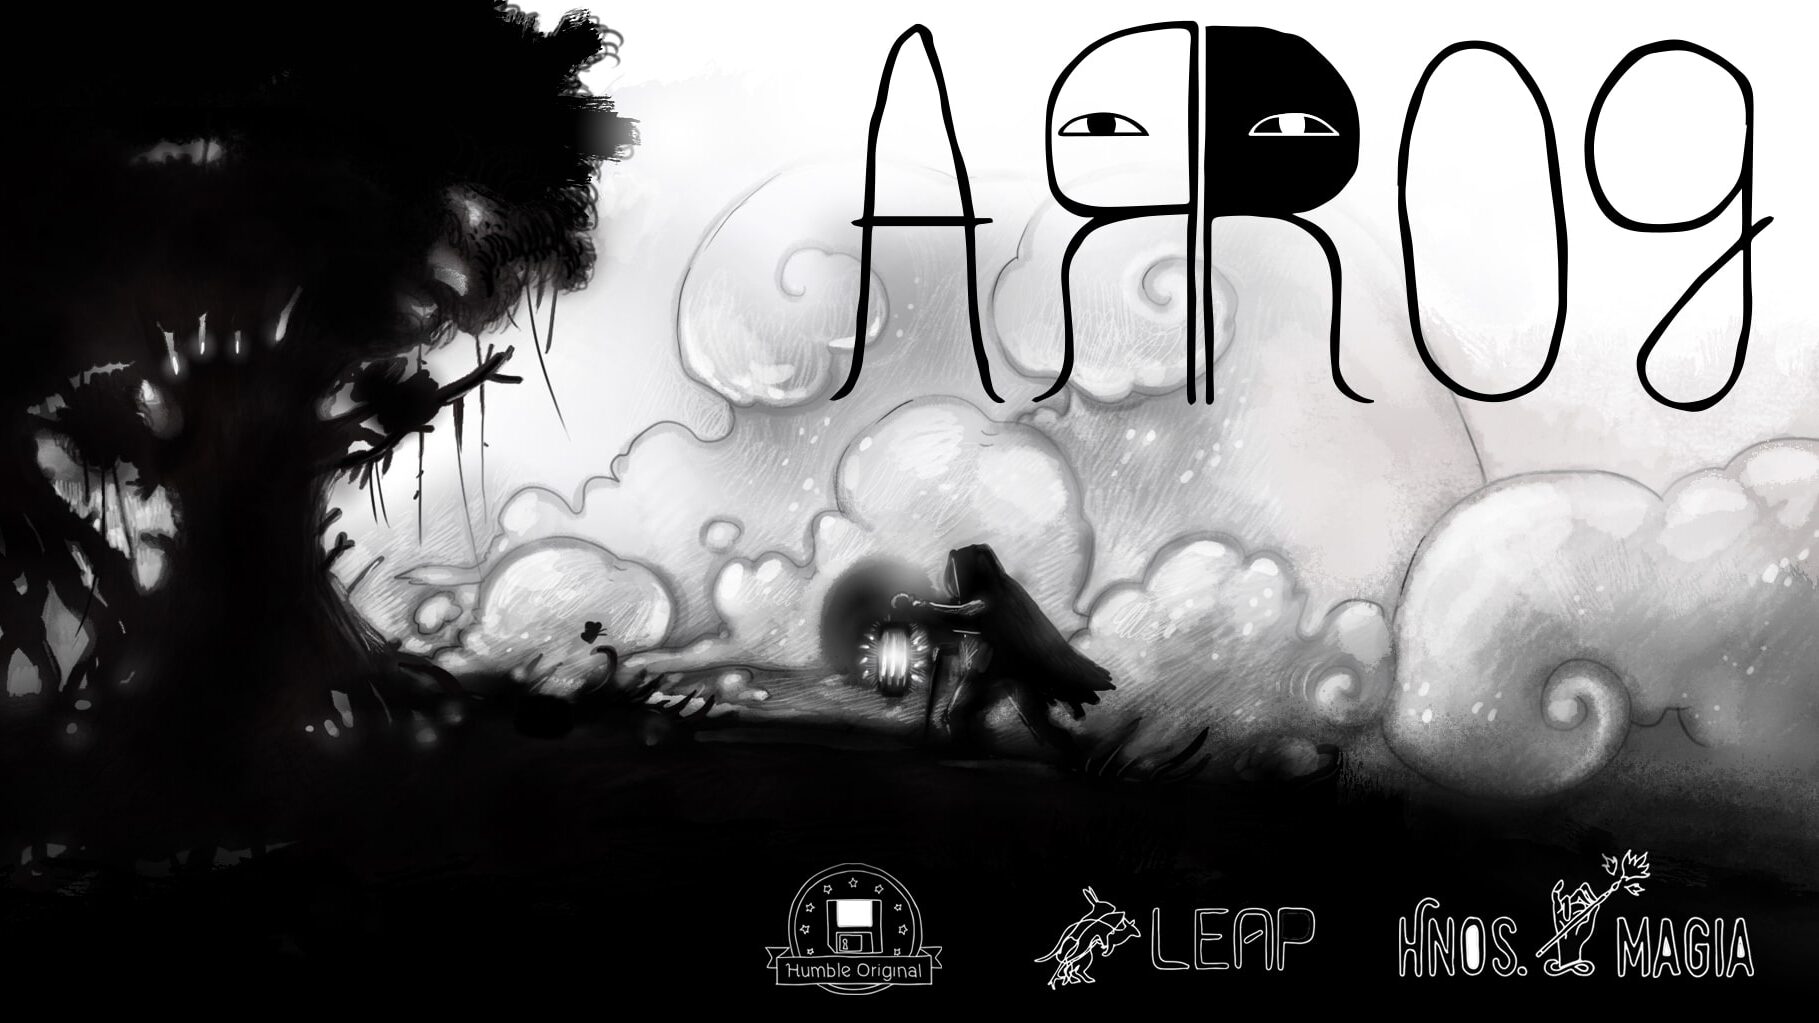 Arrog es finalista en el festival de videojuegos independientes más importante del mundo